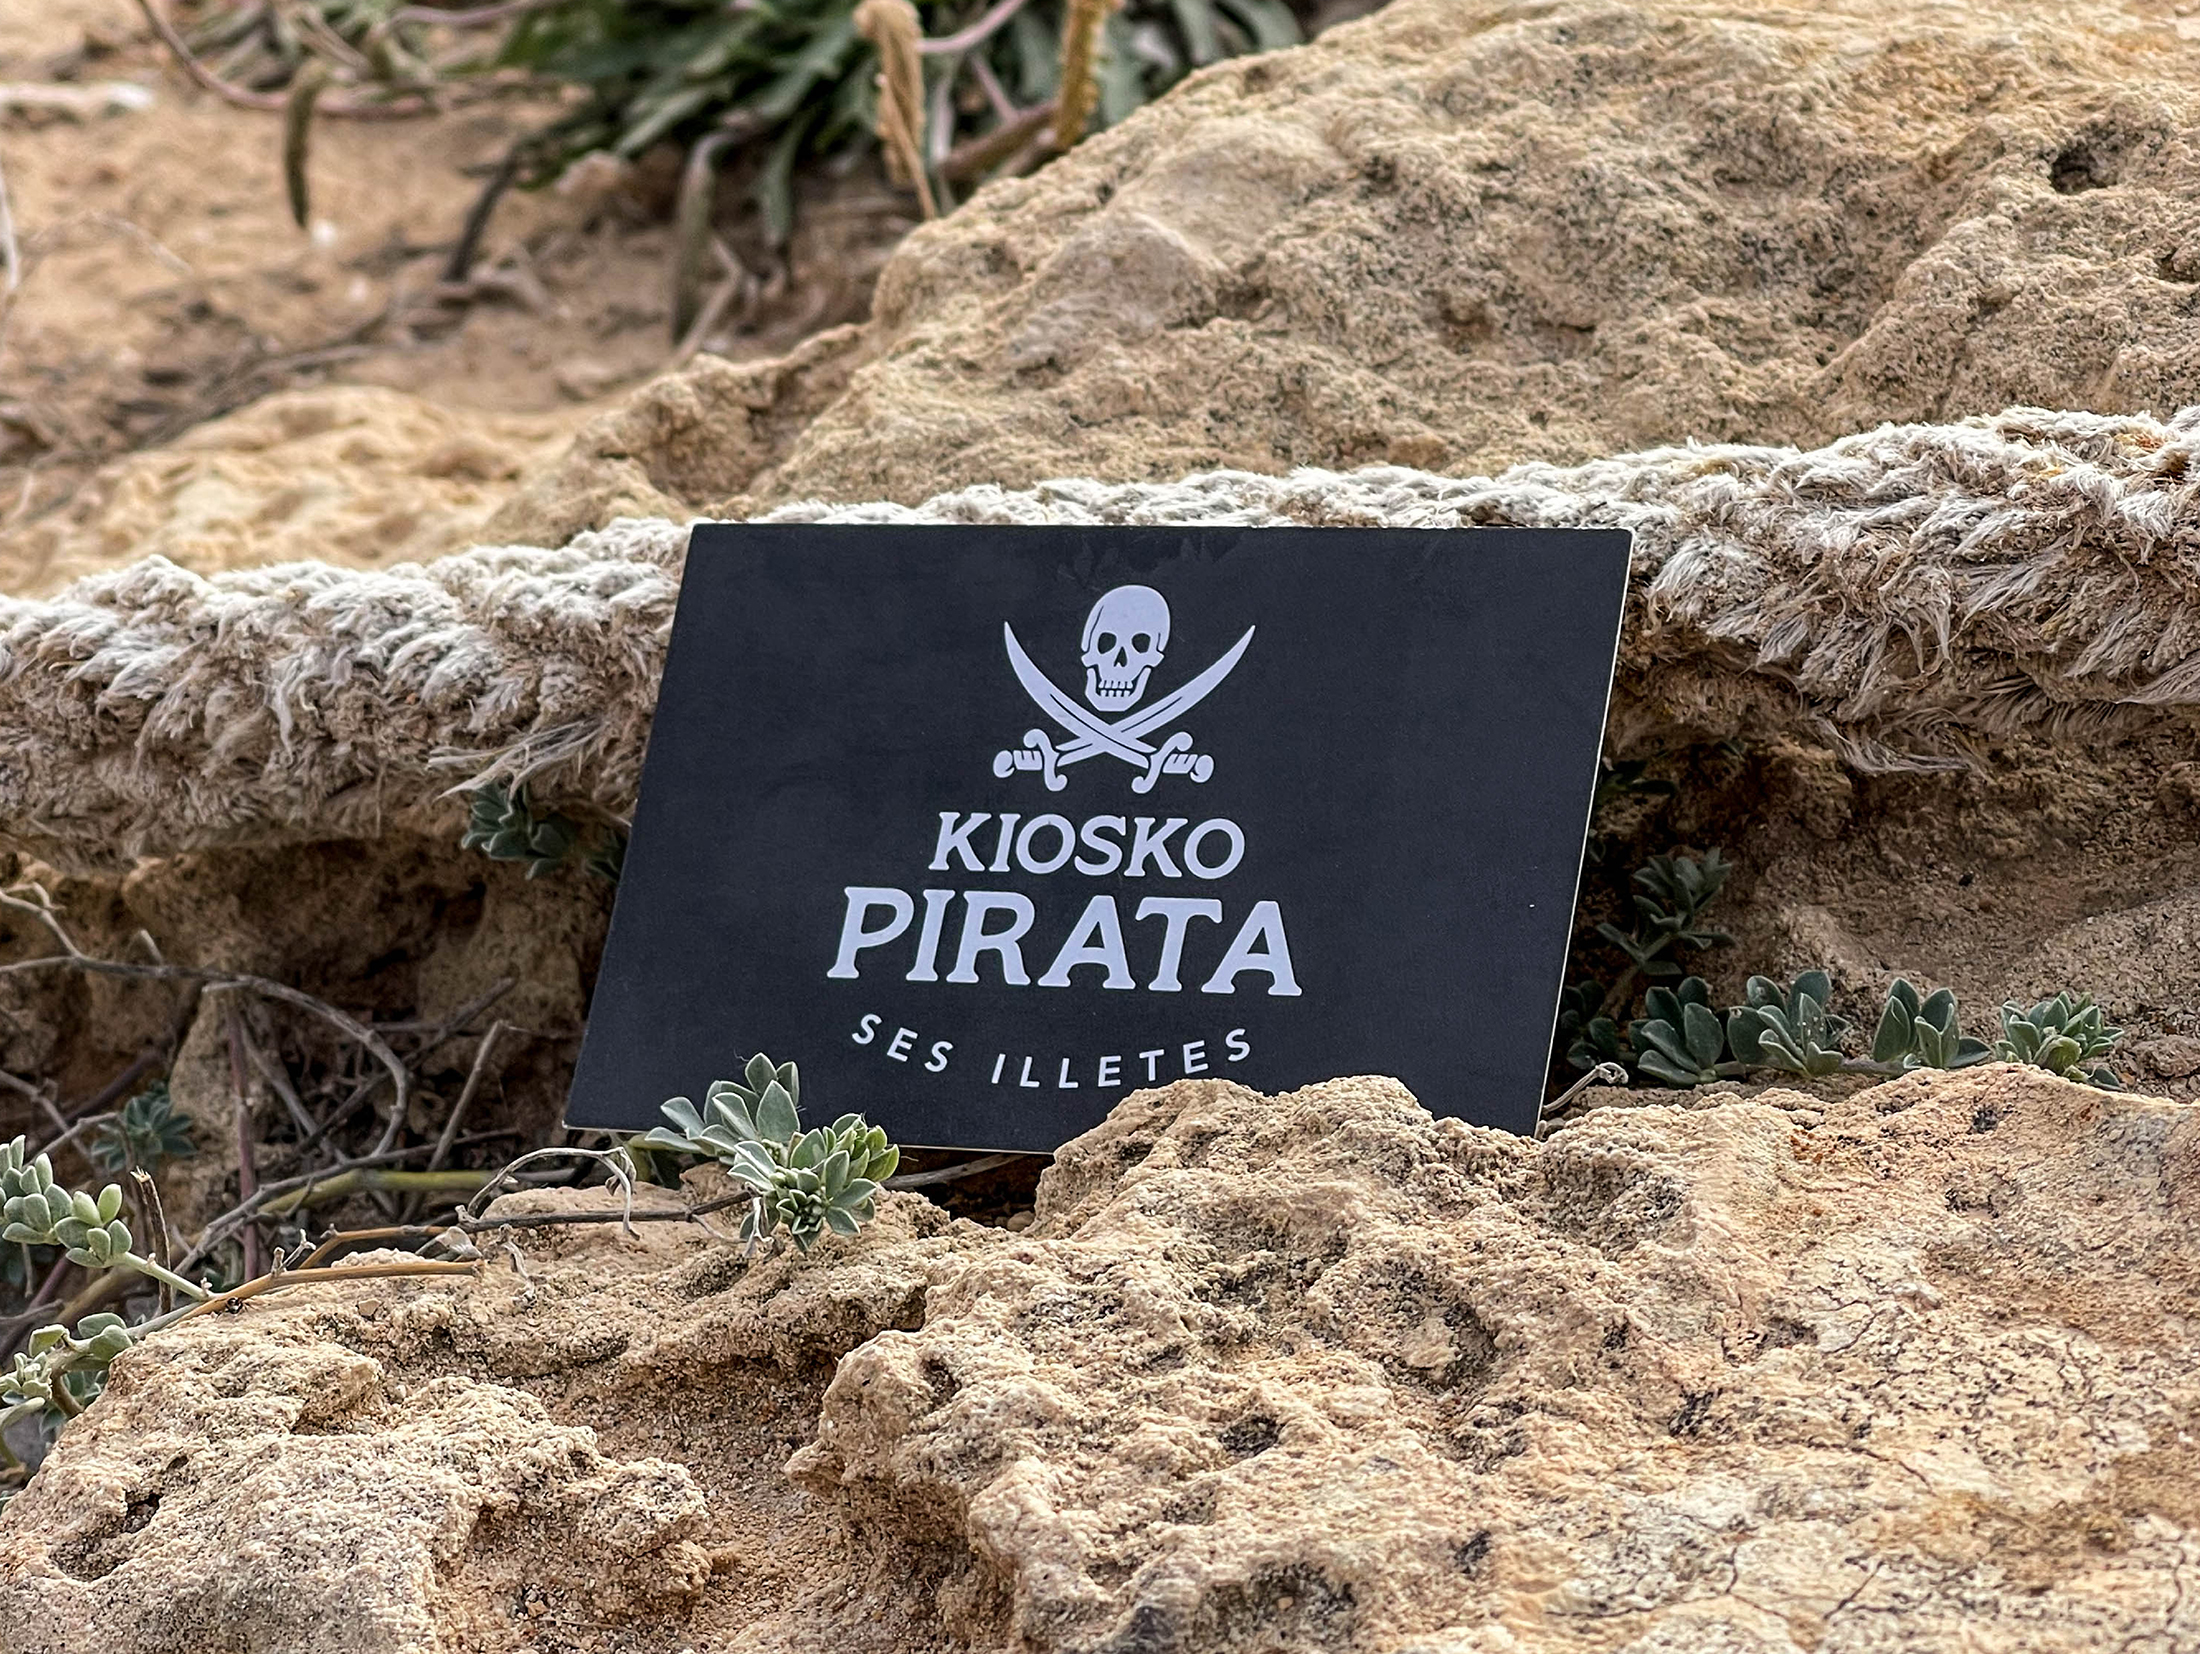 Kiosko Pirata